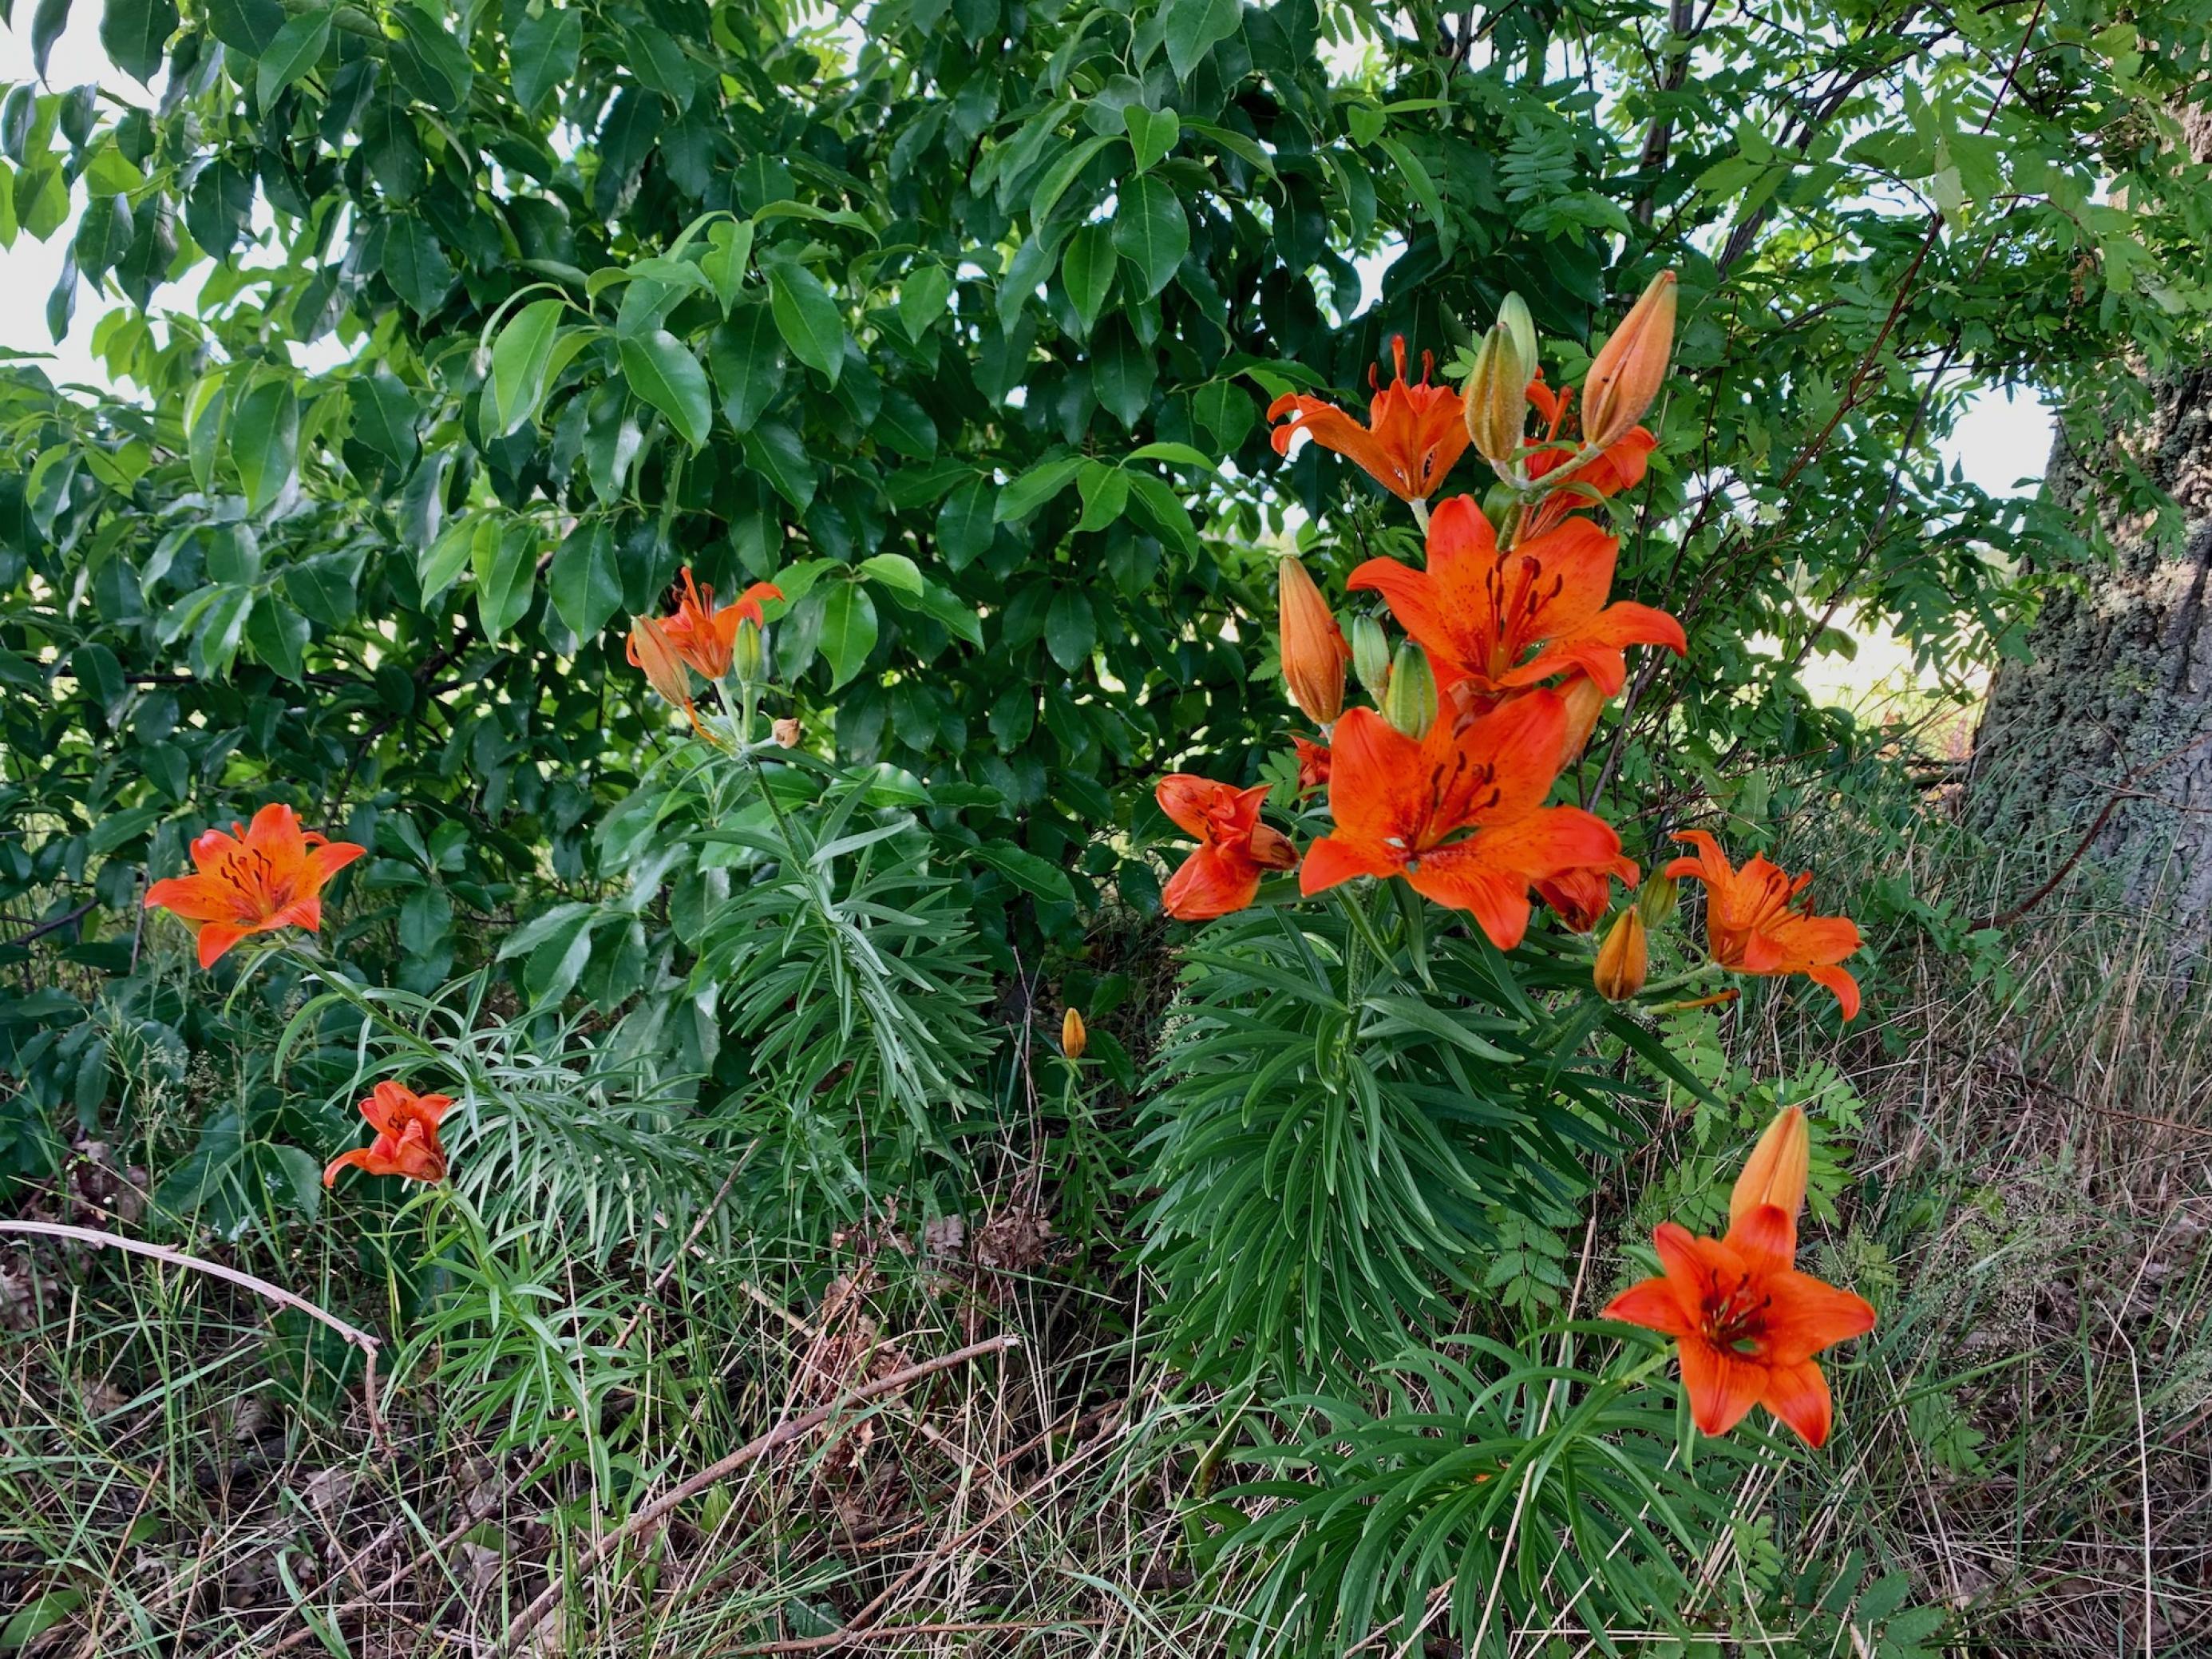 Sternförmige Blüten an aufrechten Stängeln, dahinter das Laub eines Buschs, 